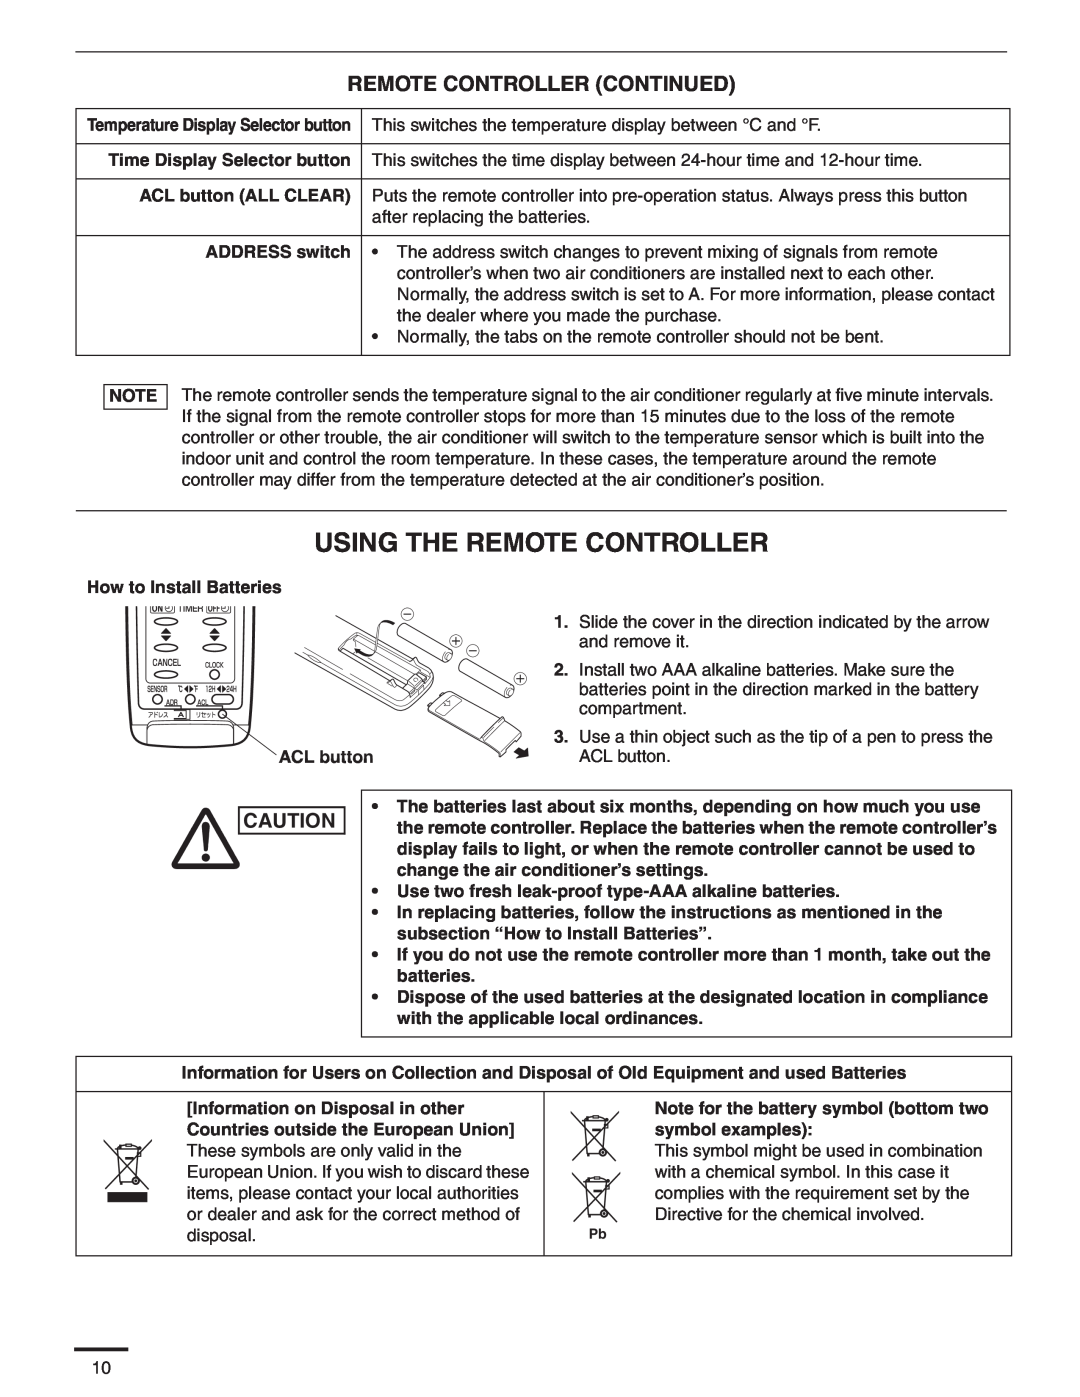 Panasonic CU-KS18NKU, CS-KS18NKU service manual Using The Remote Controller, Remote Controller Continued 